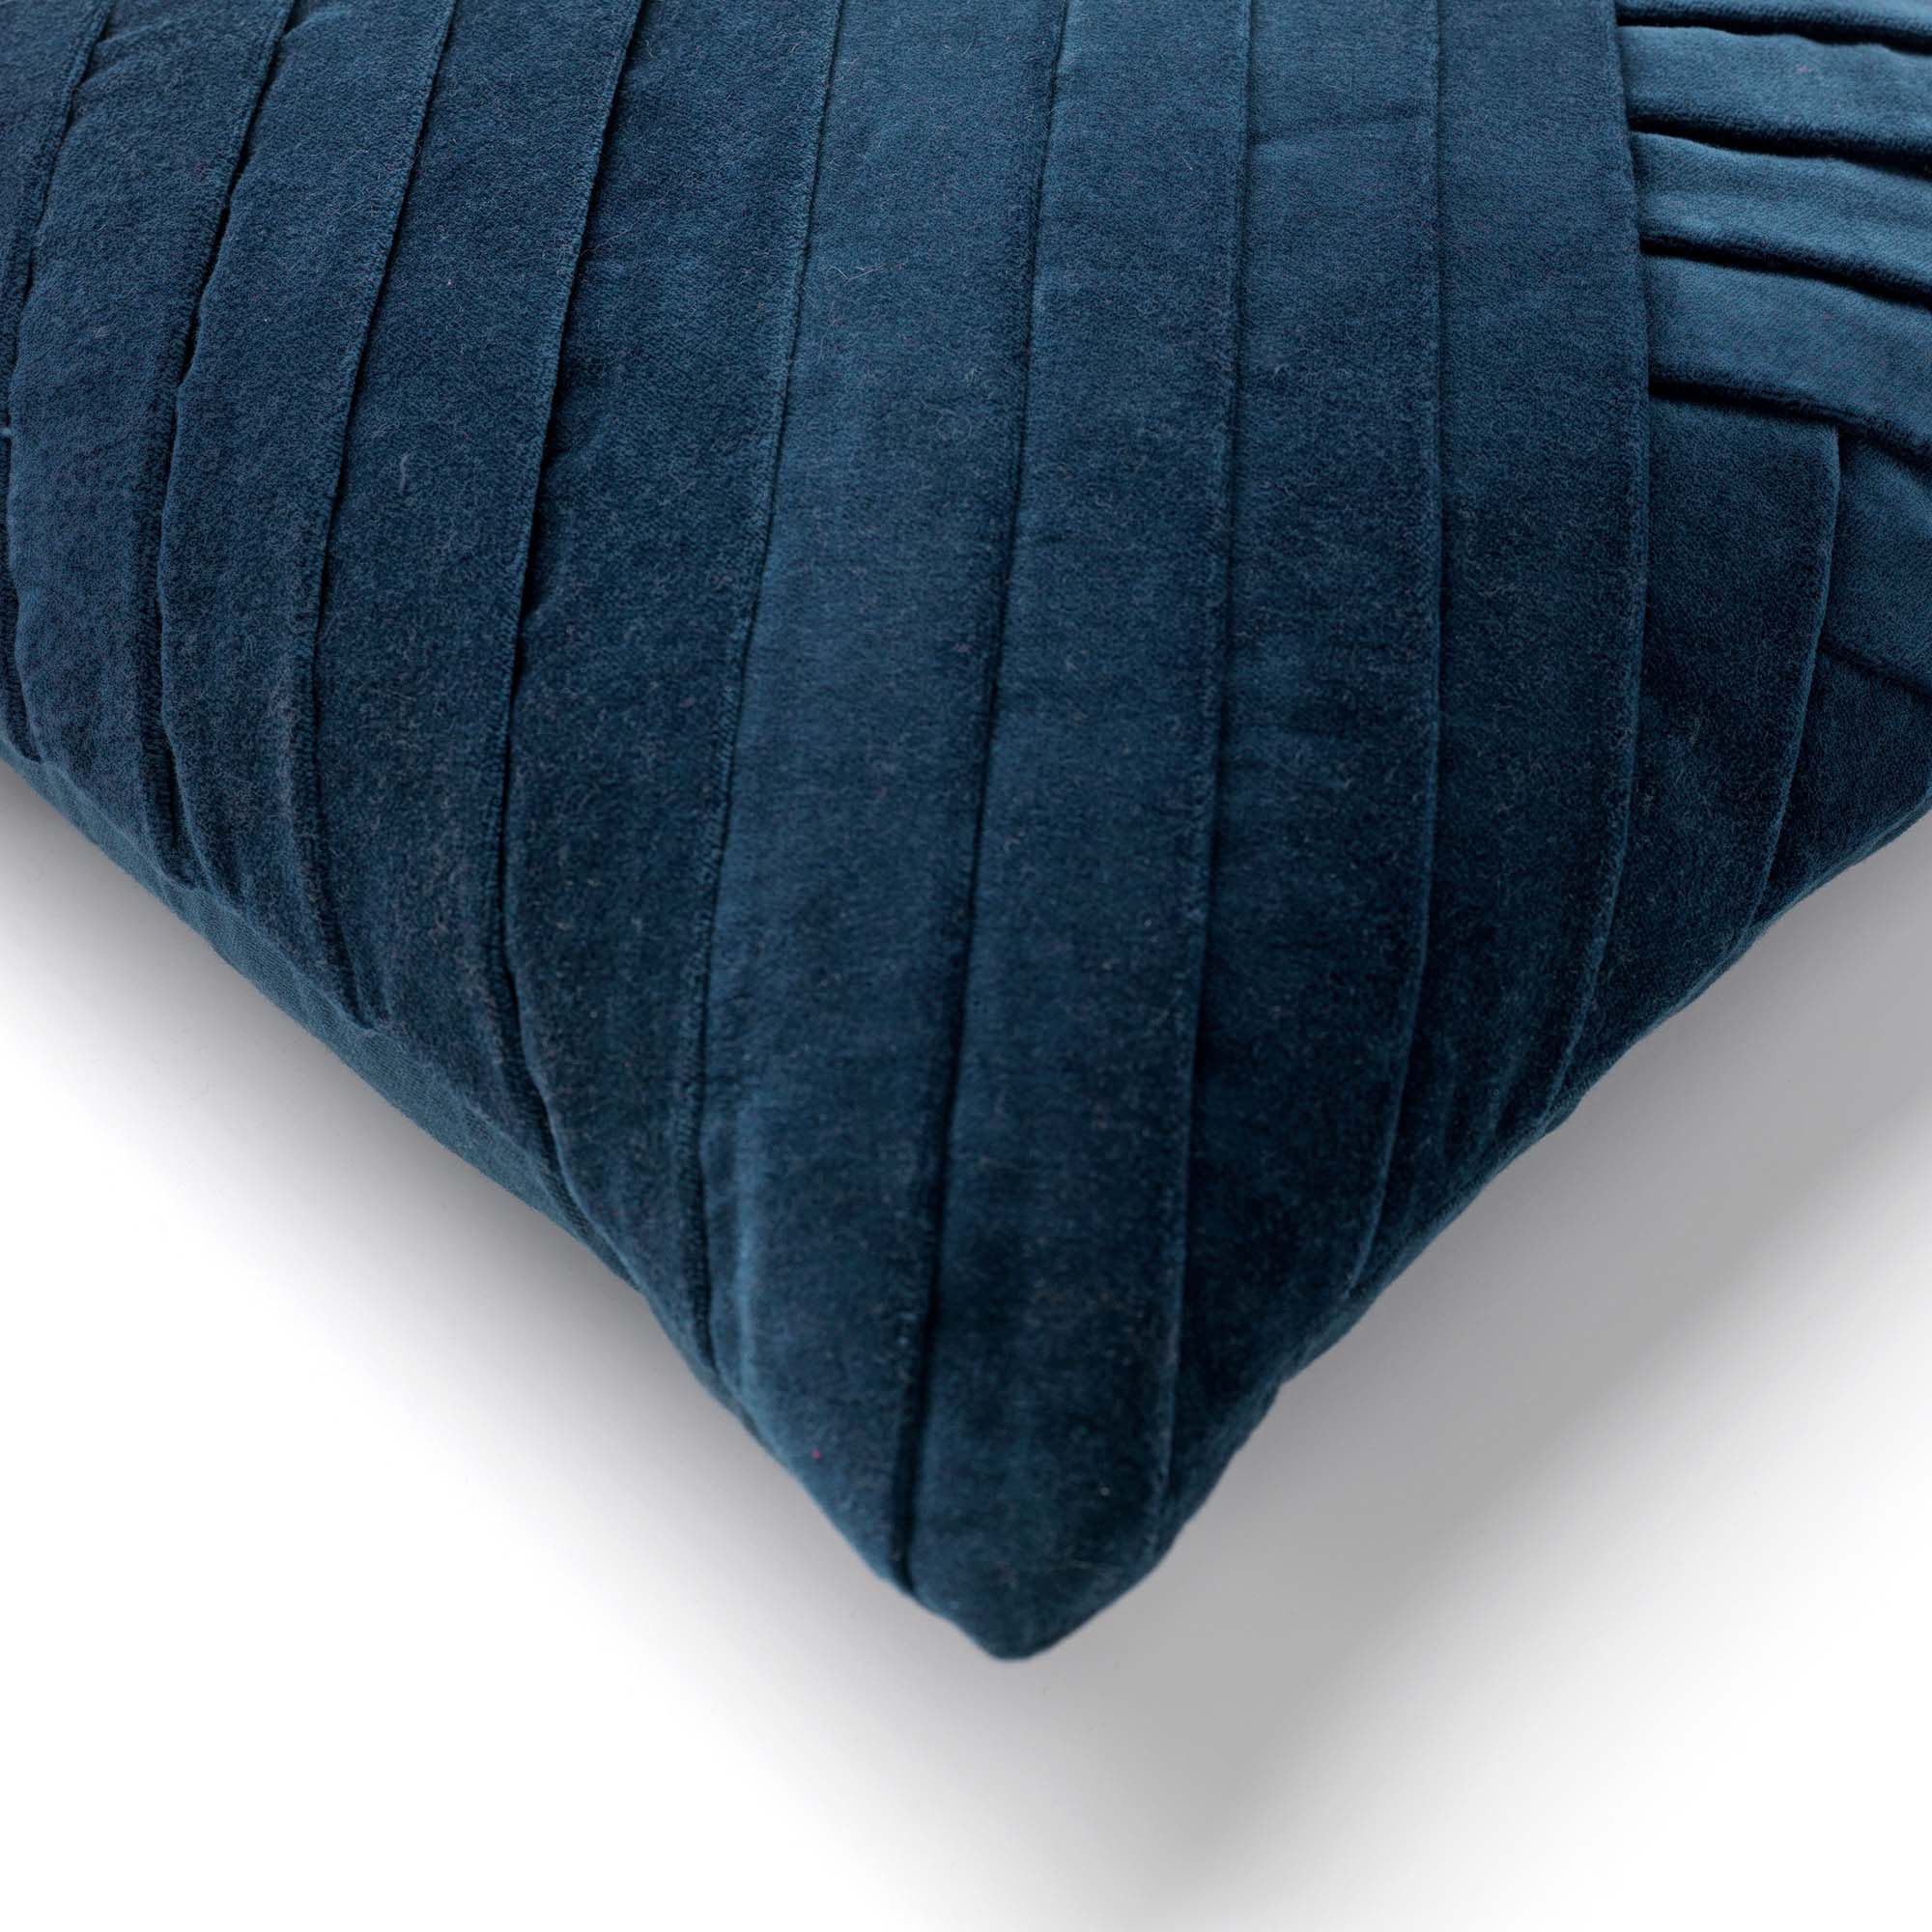 GIDI - Kussenhoes velvet 45x45 cm Insignia Blue - blauw